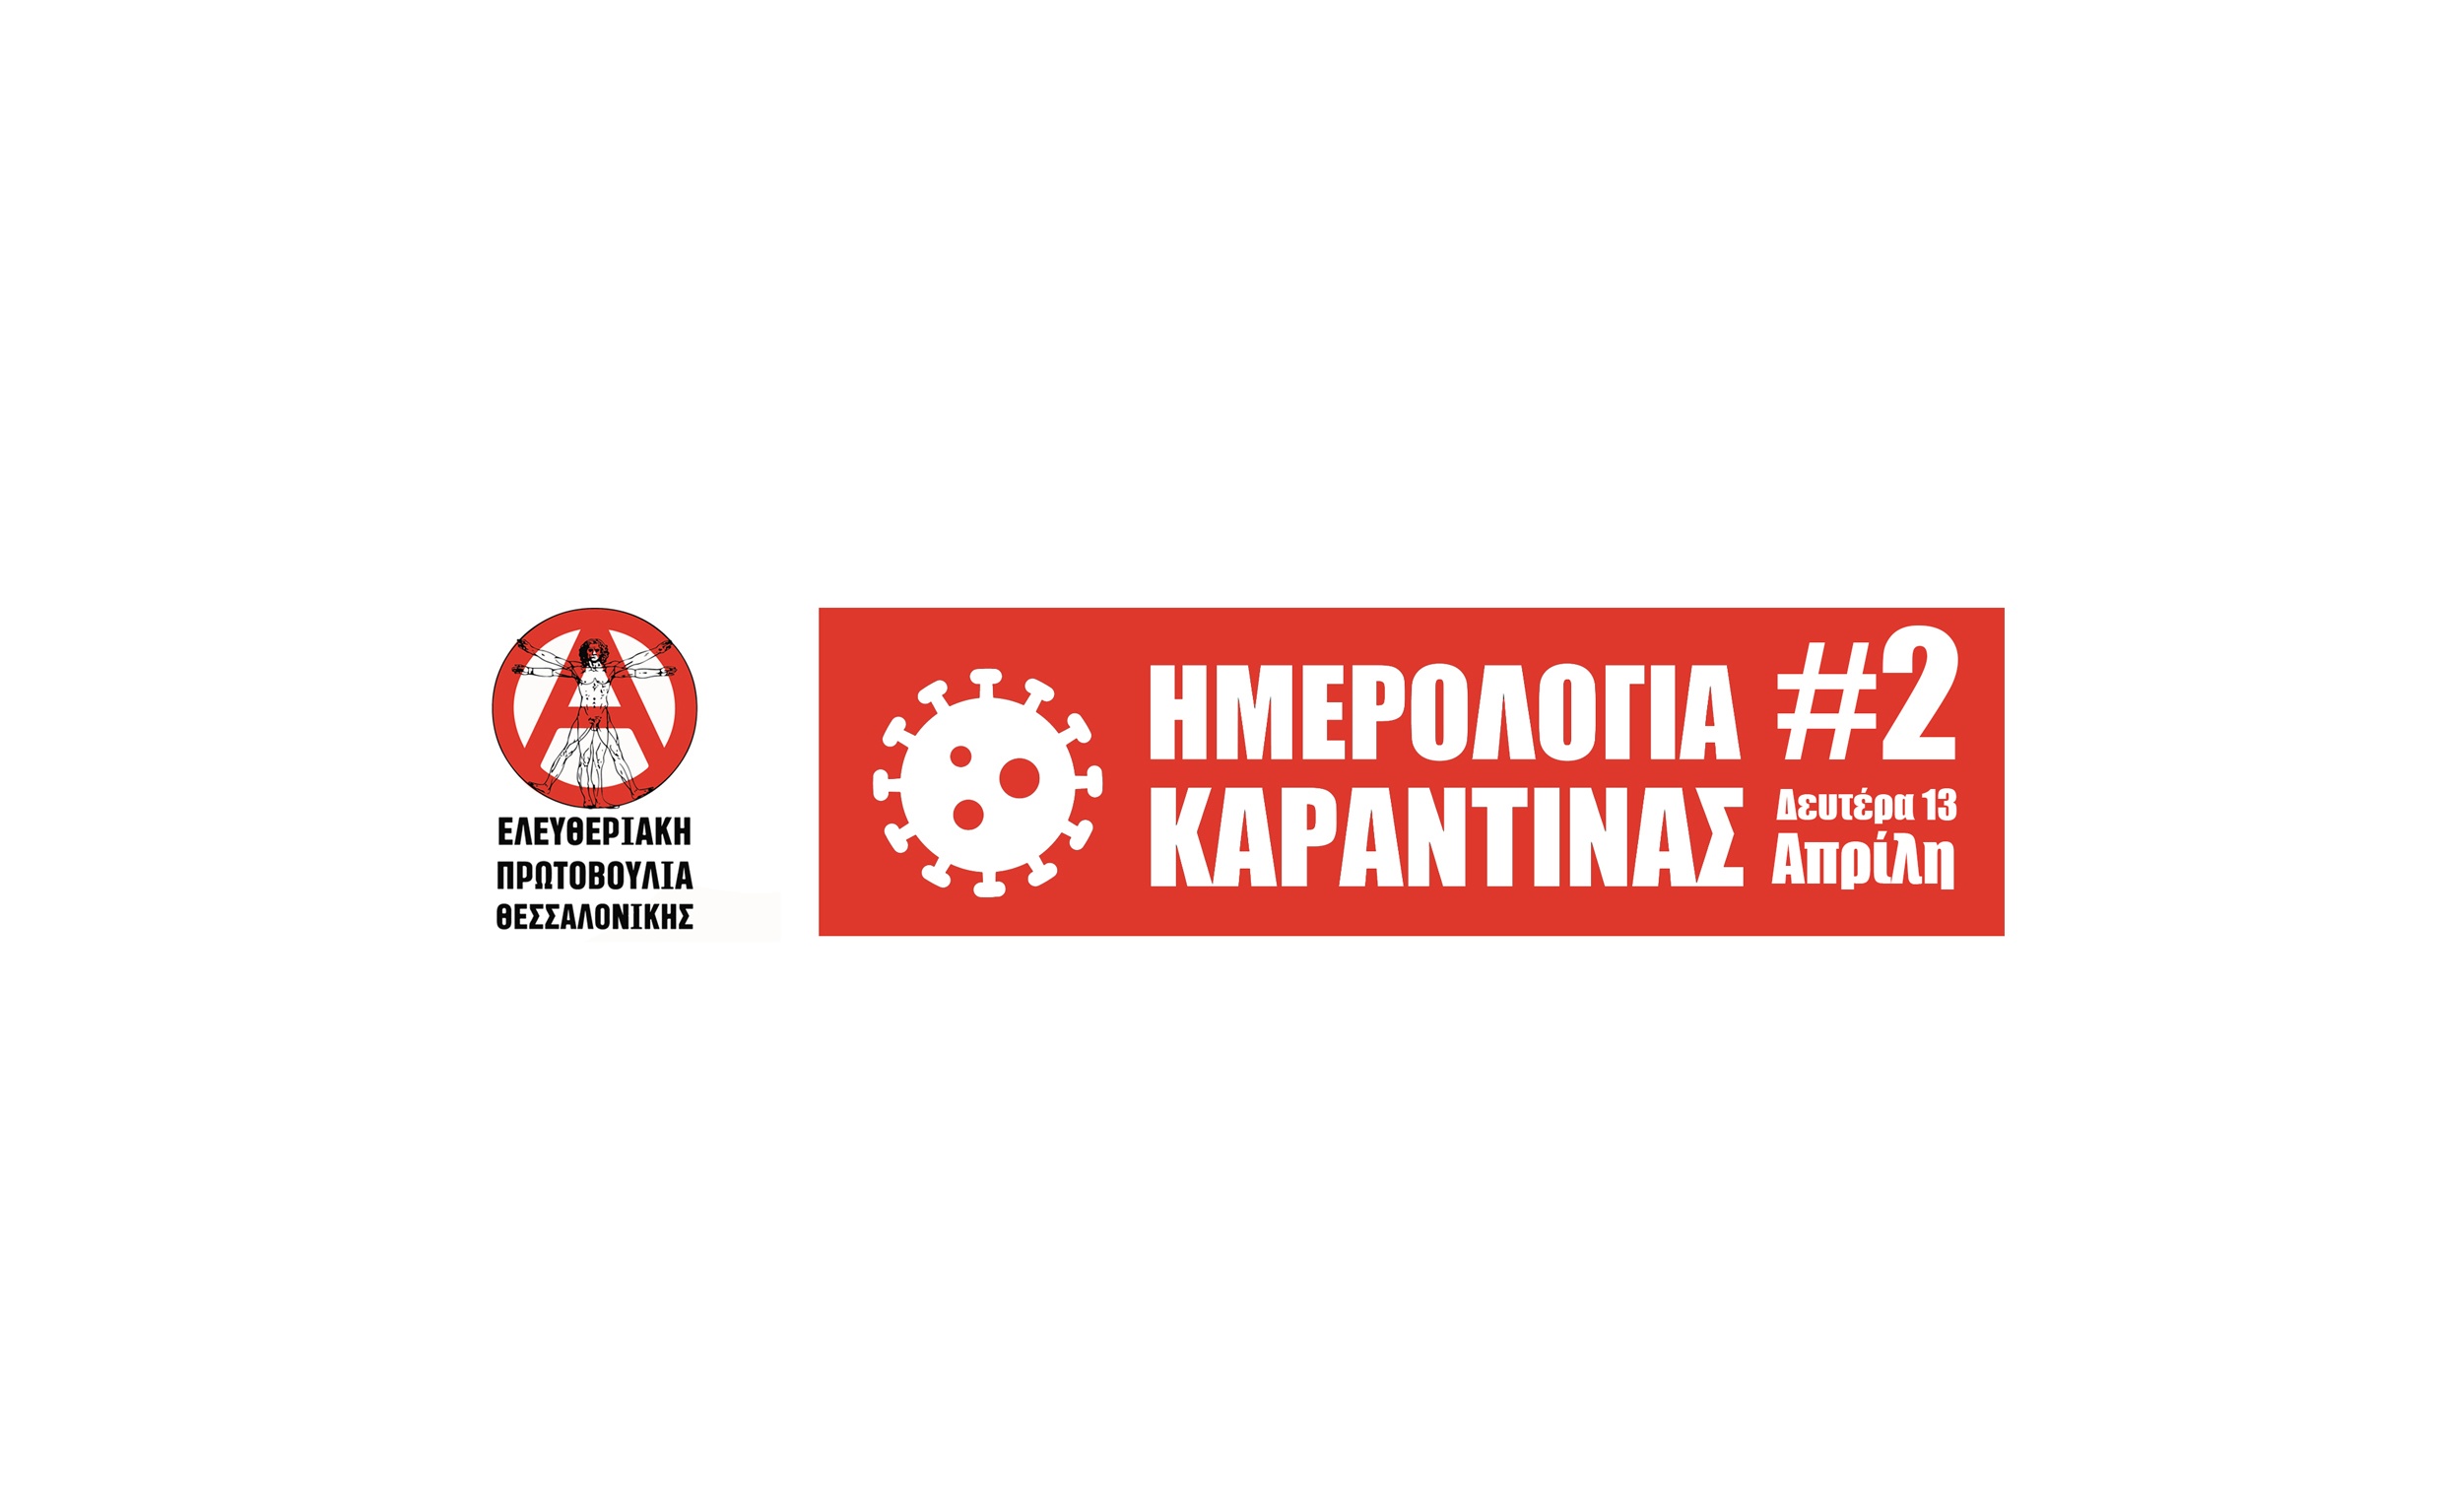 Ημερολόγια καραντίνας #2 από την Ελευθεριακή Πρωτοβουλία Θεσσαλονίκης